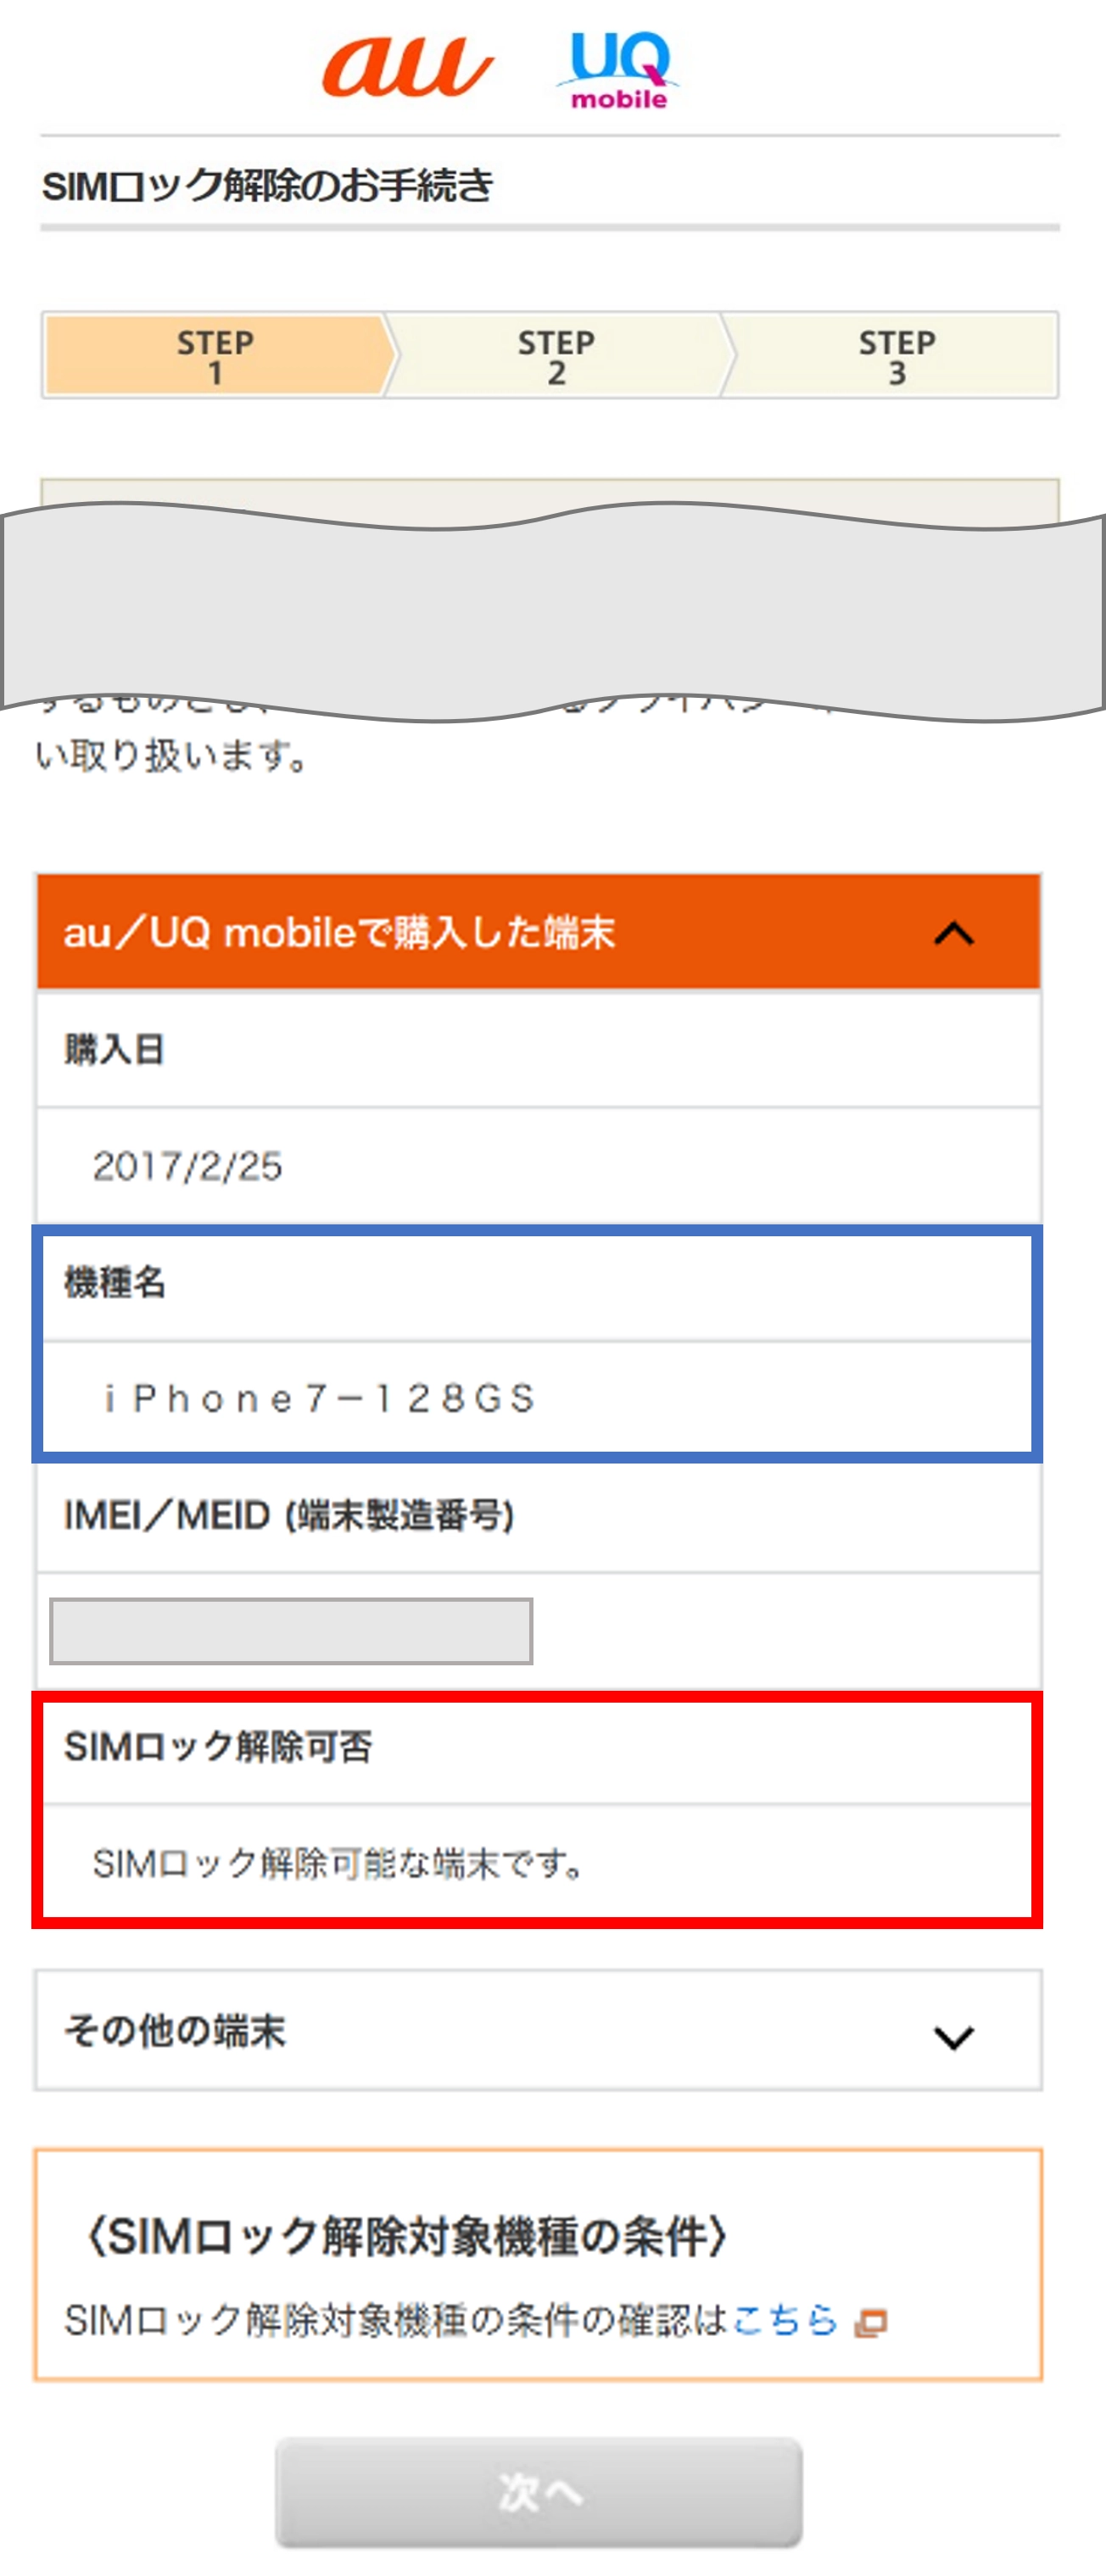 SIMロック解除のお手続き | スマートフォン・携帯電話をご利用の方 | au